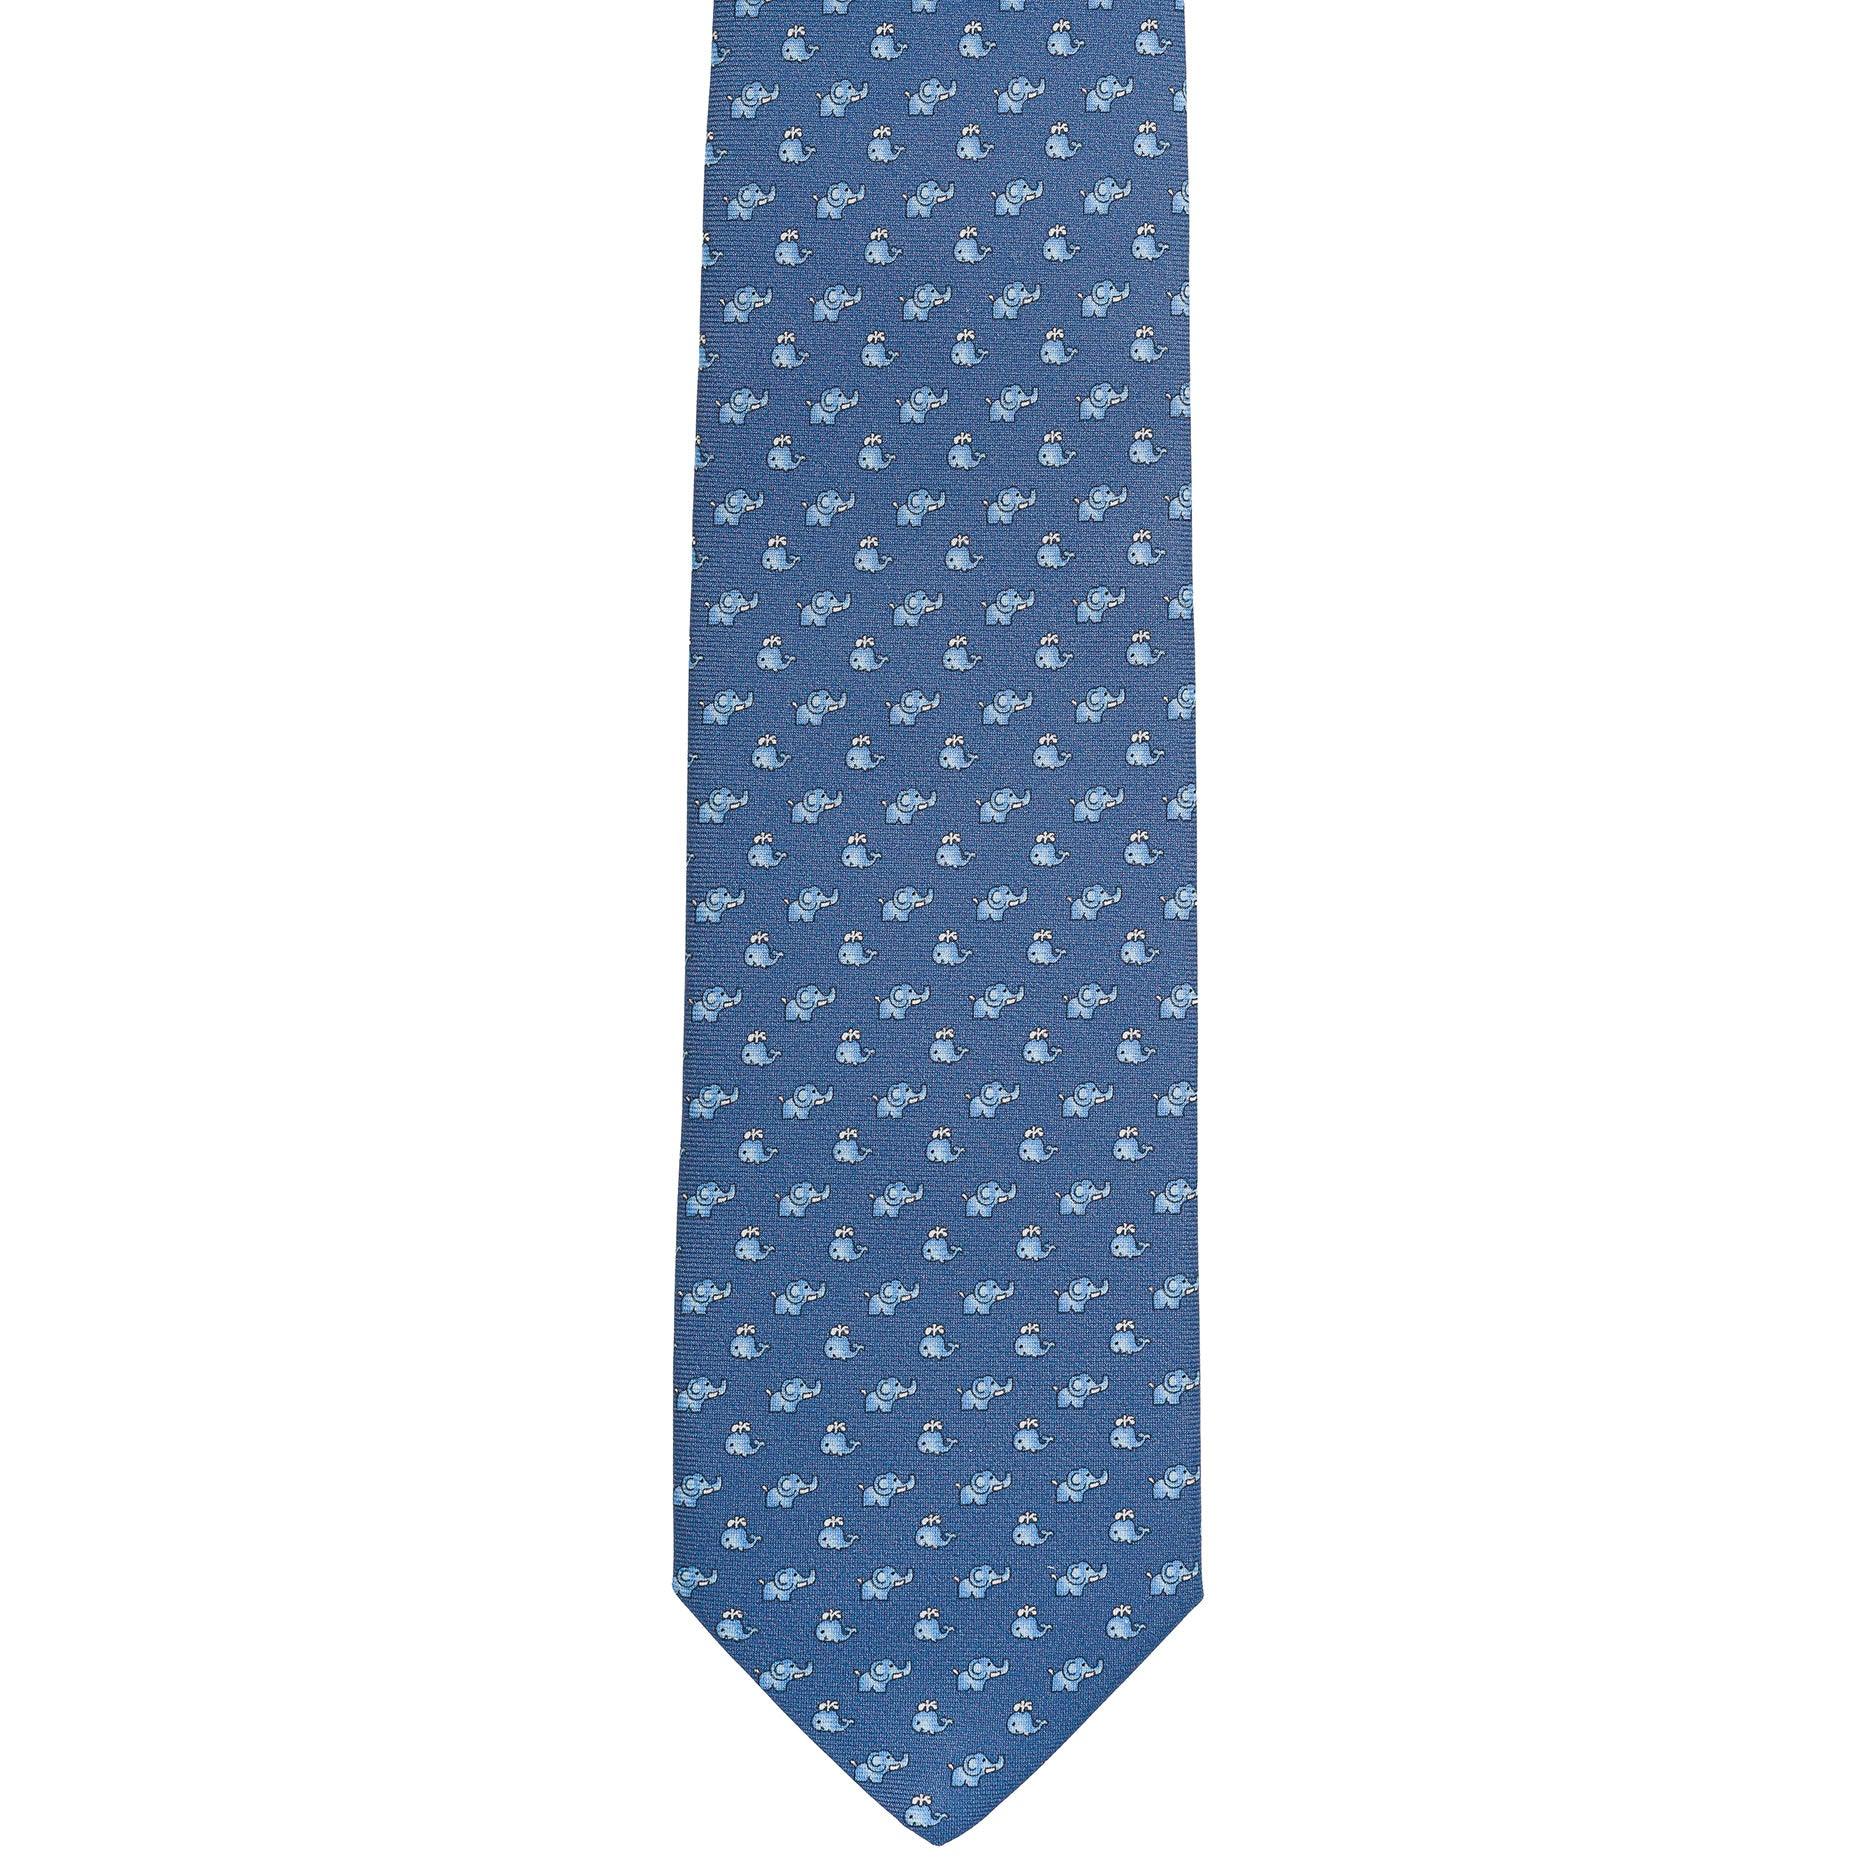 Cravatta 3 pieghe - TAL E2 - Talarico Cravatte